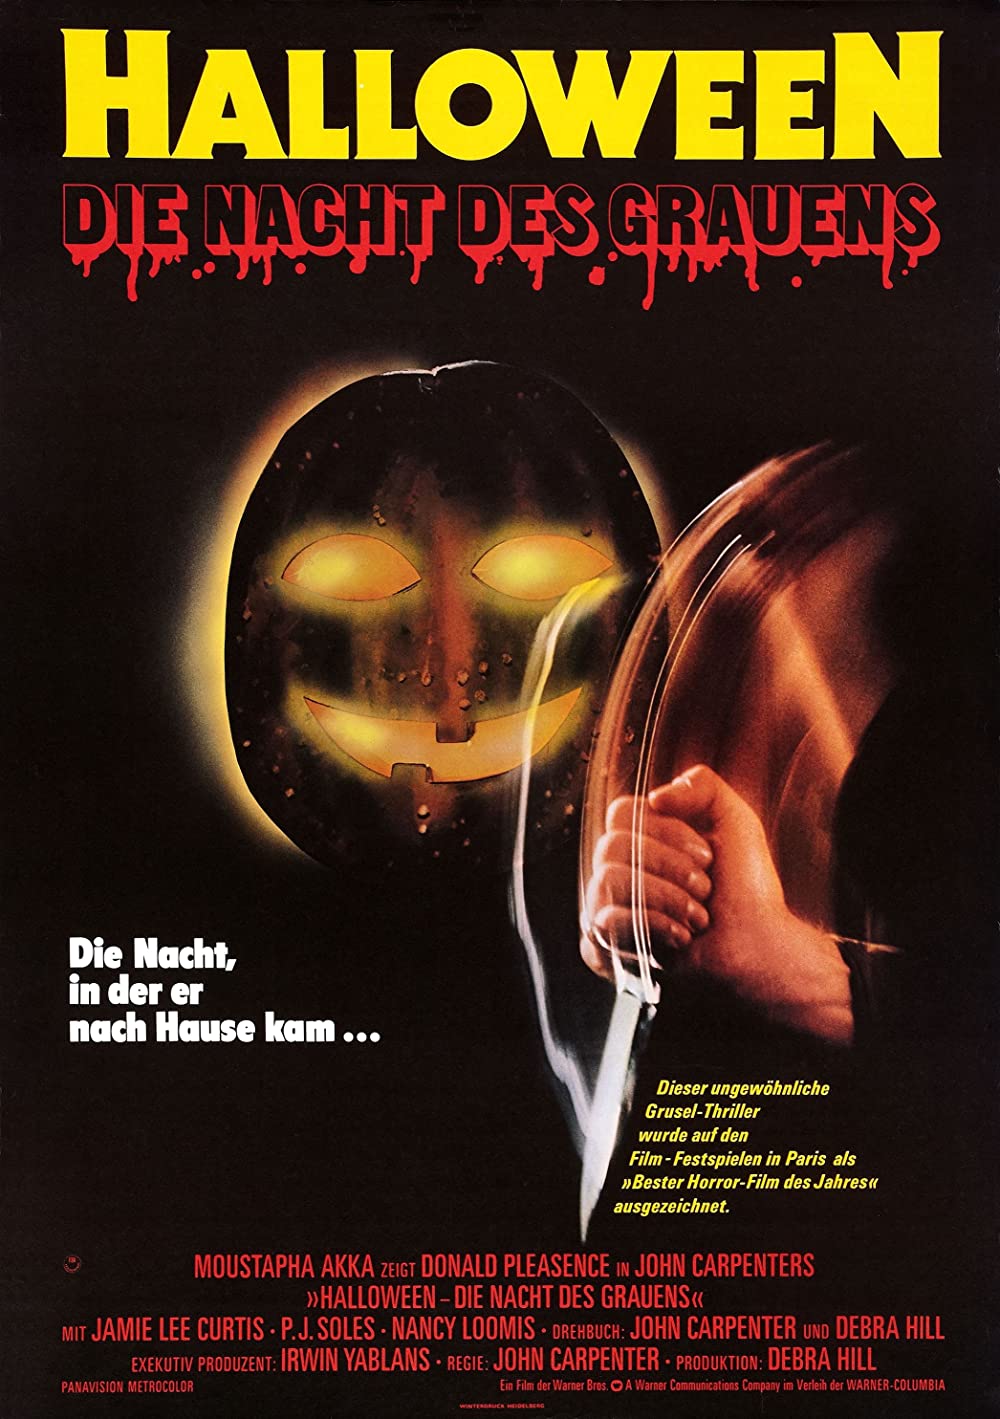 Filmbeschreibung zu Halloween - Die Nacht des Grauens